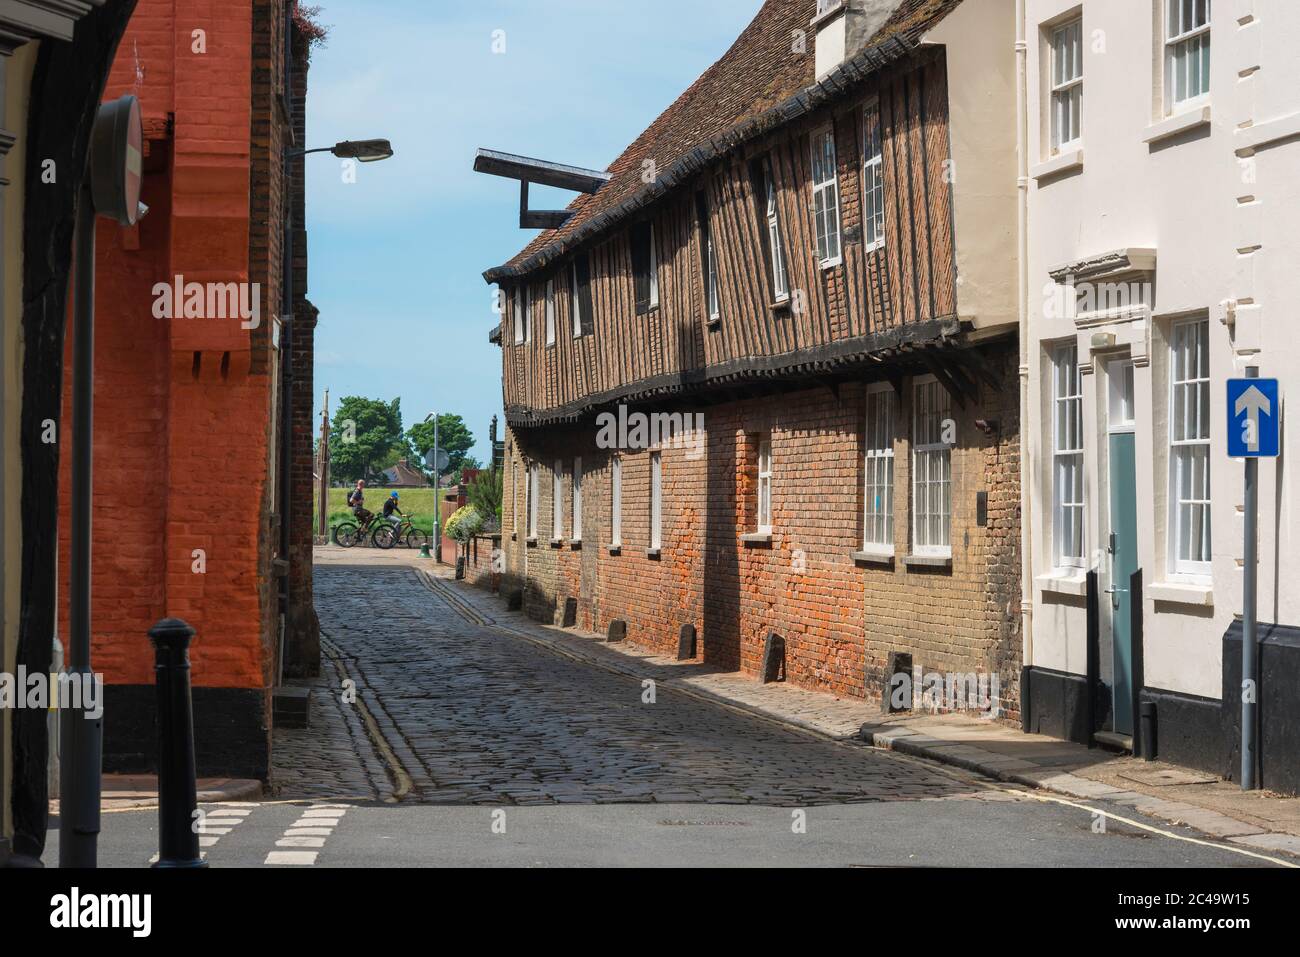 Edificios históricos de Kings Lynn, vista a lo largo de St Margaret's Lane hacia la zona histórica de la vieja ciudad frente al mar de King's Lynn, Norfolk, Reino Unido. Foto de stock